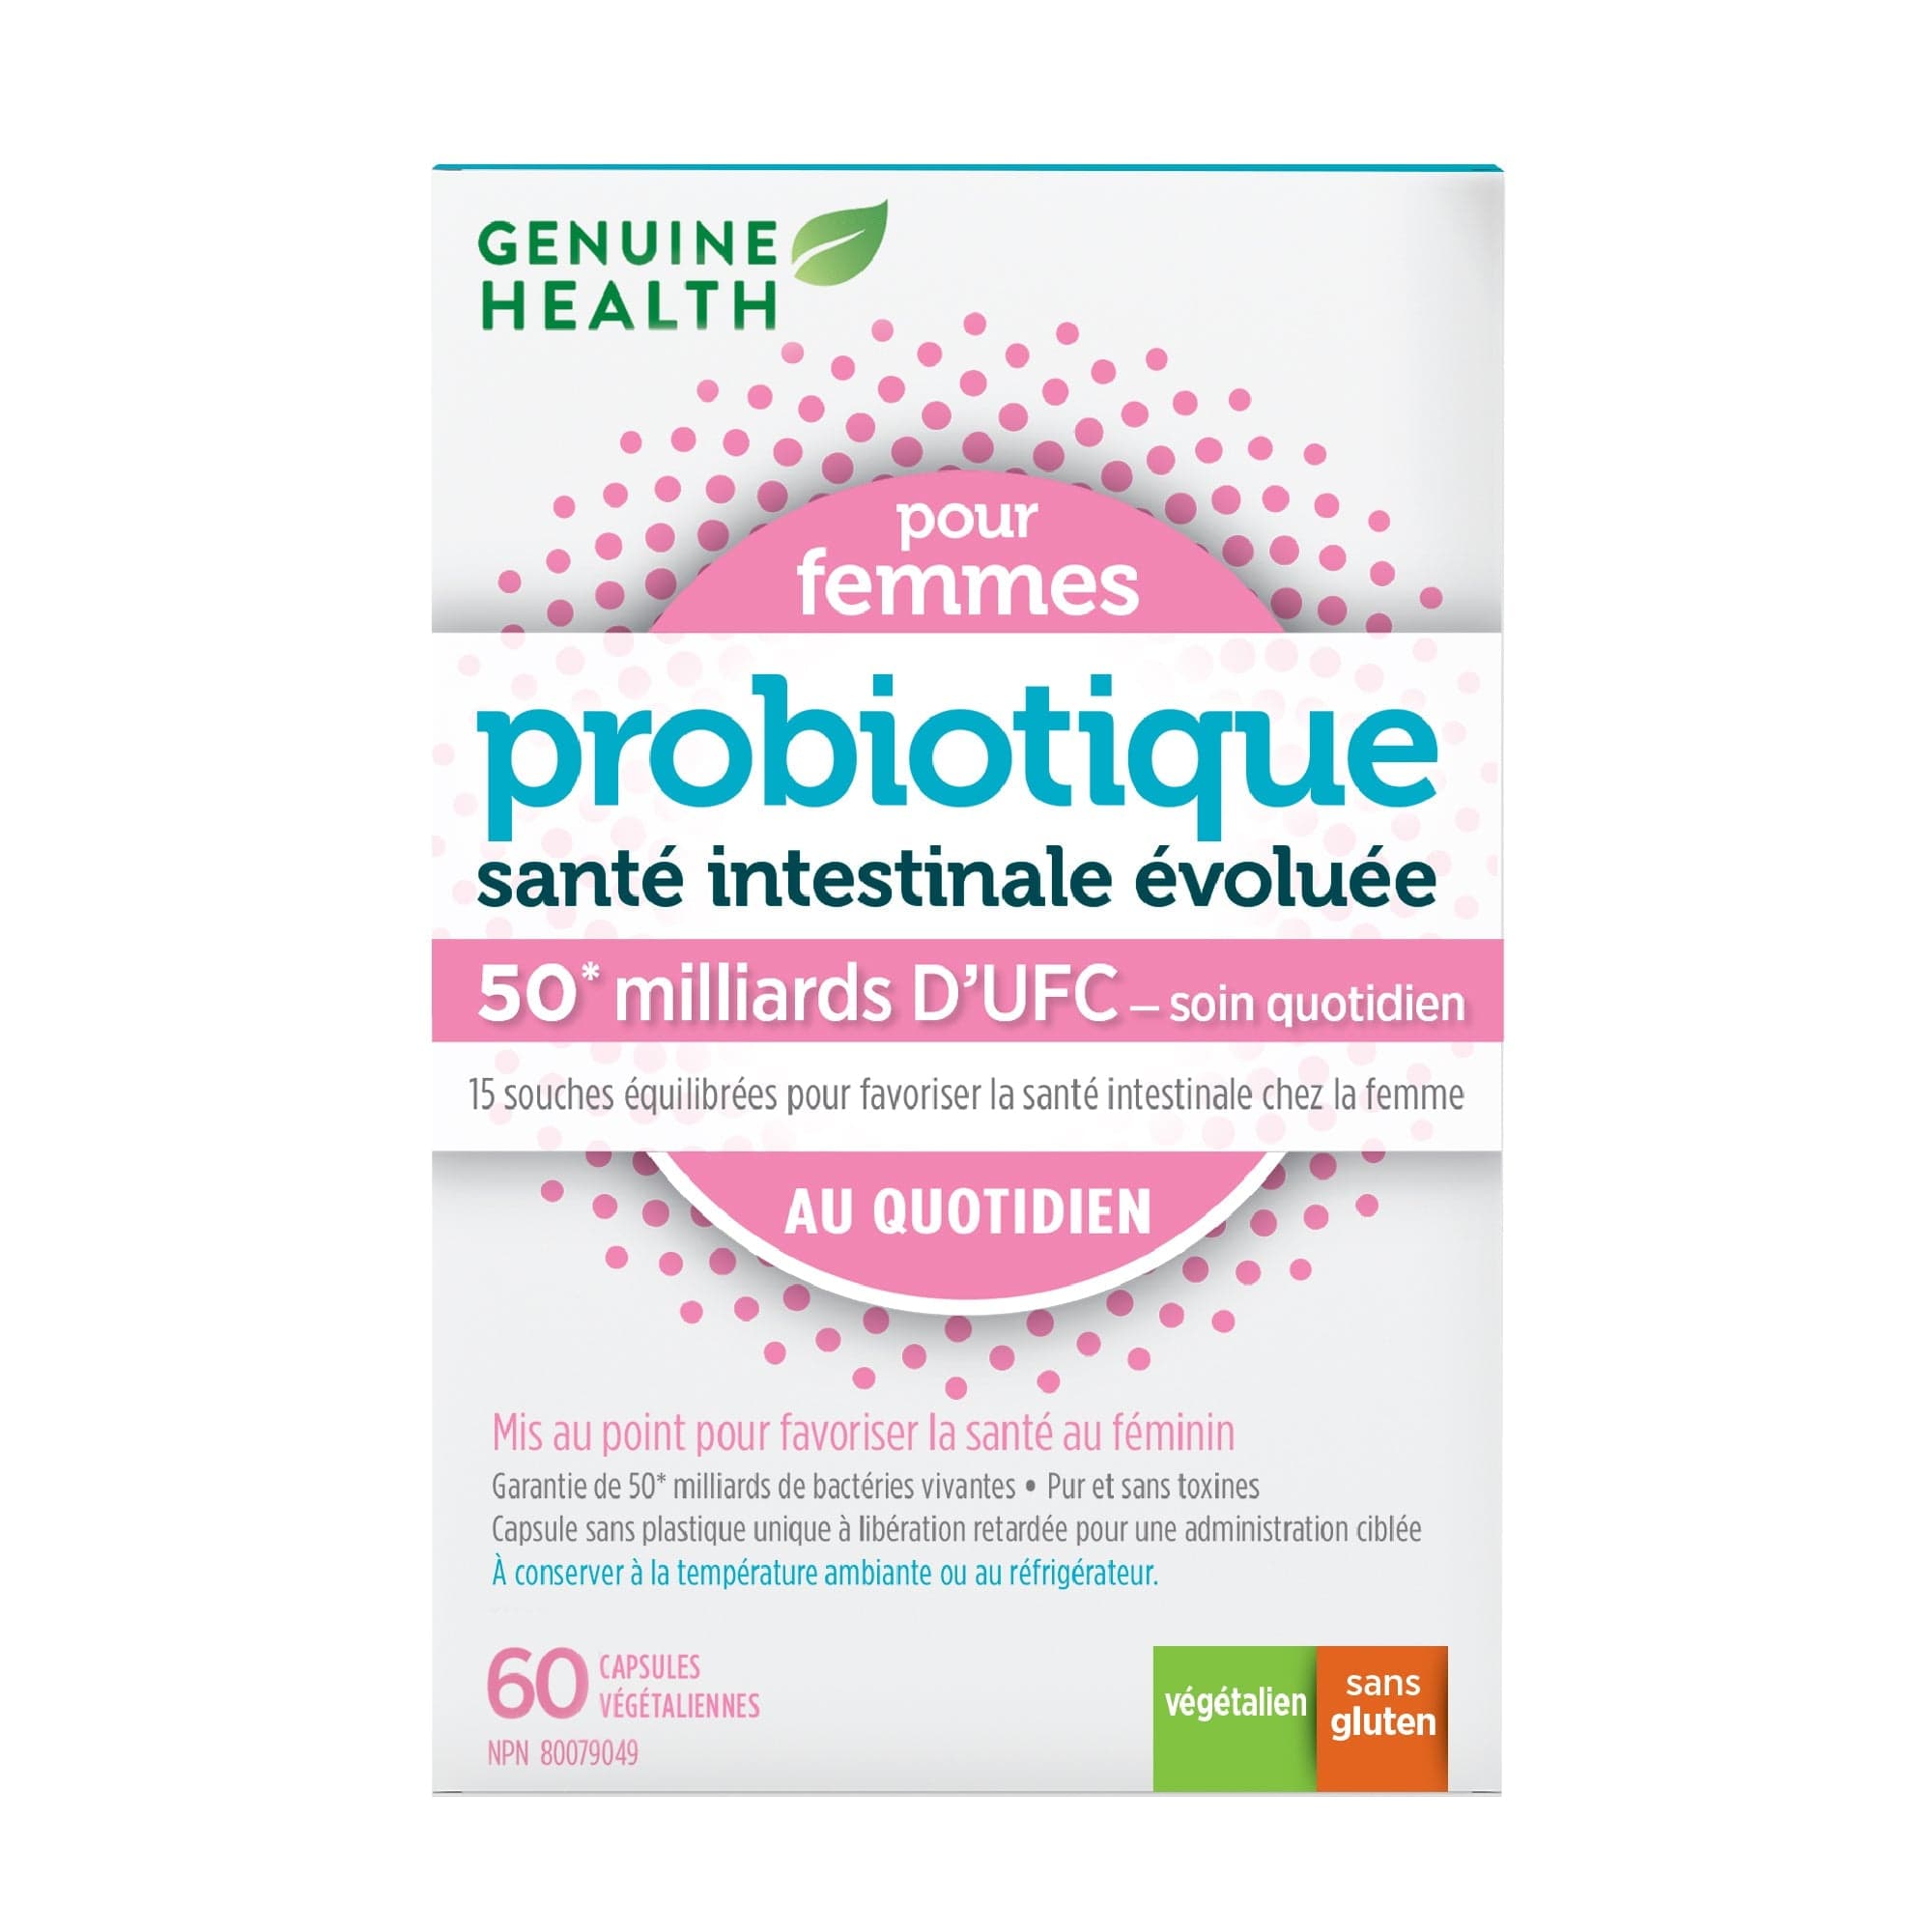 GENUINE HEALTH Suppléments Probiotique femme au quotidien (50 milliards D'UFC) 60vcaps